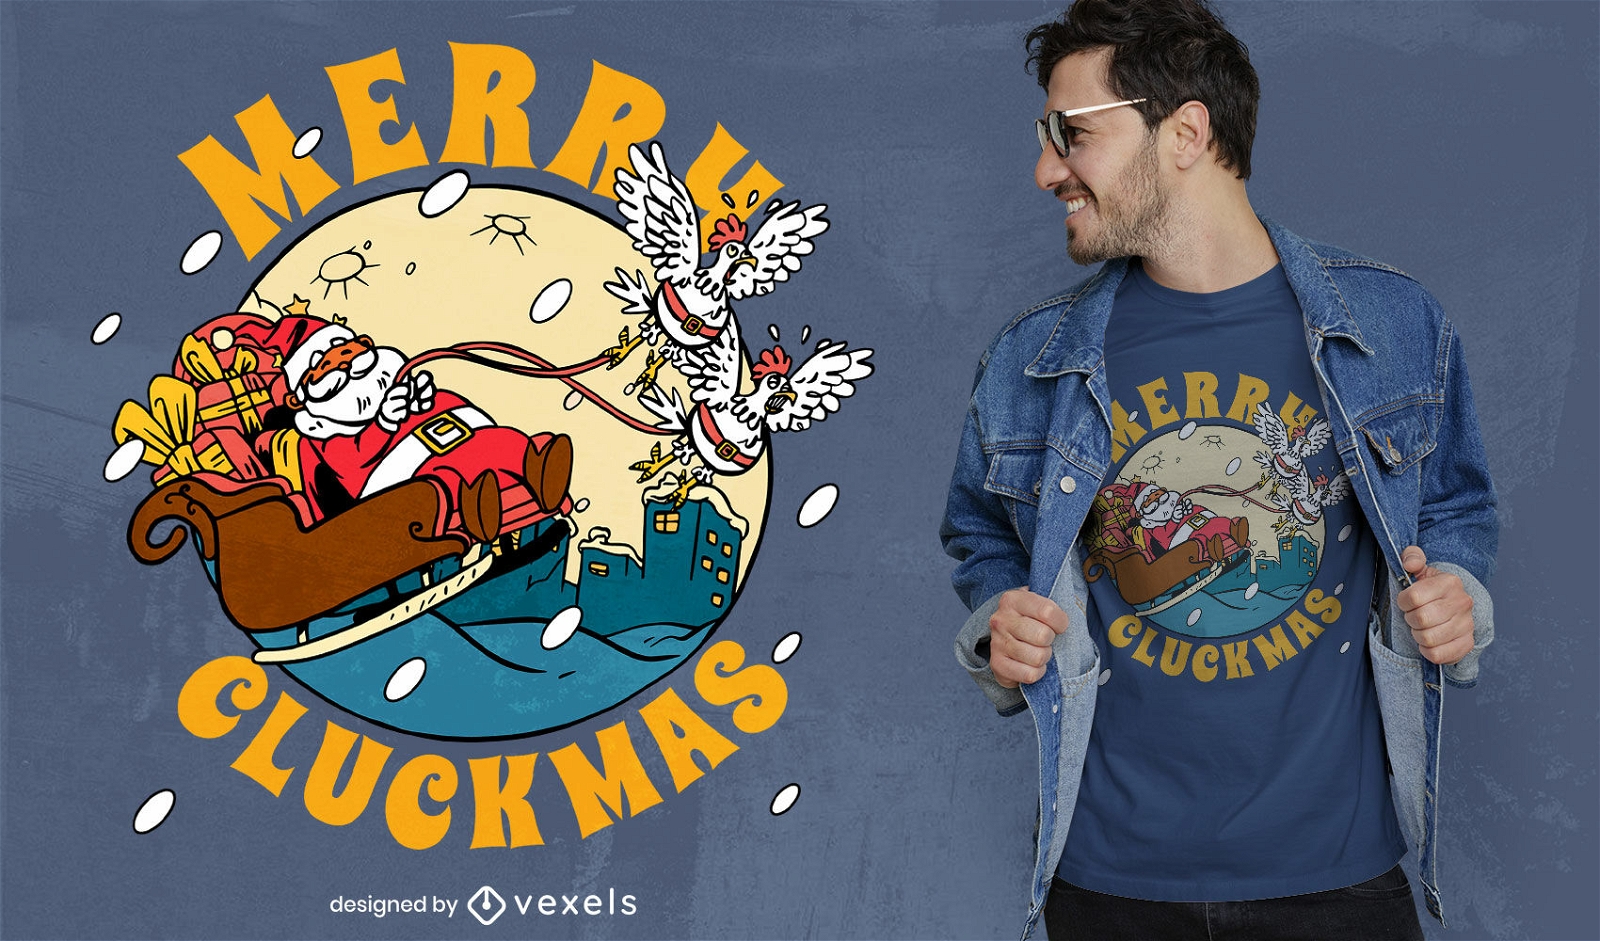 Merry cluckmas Christmas t-shirt design